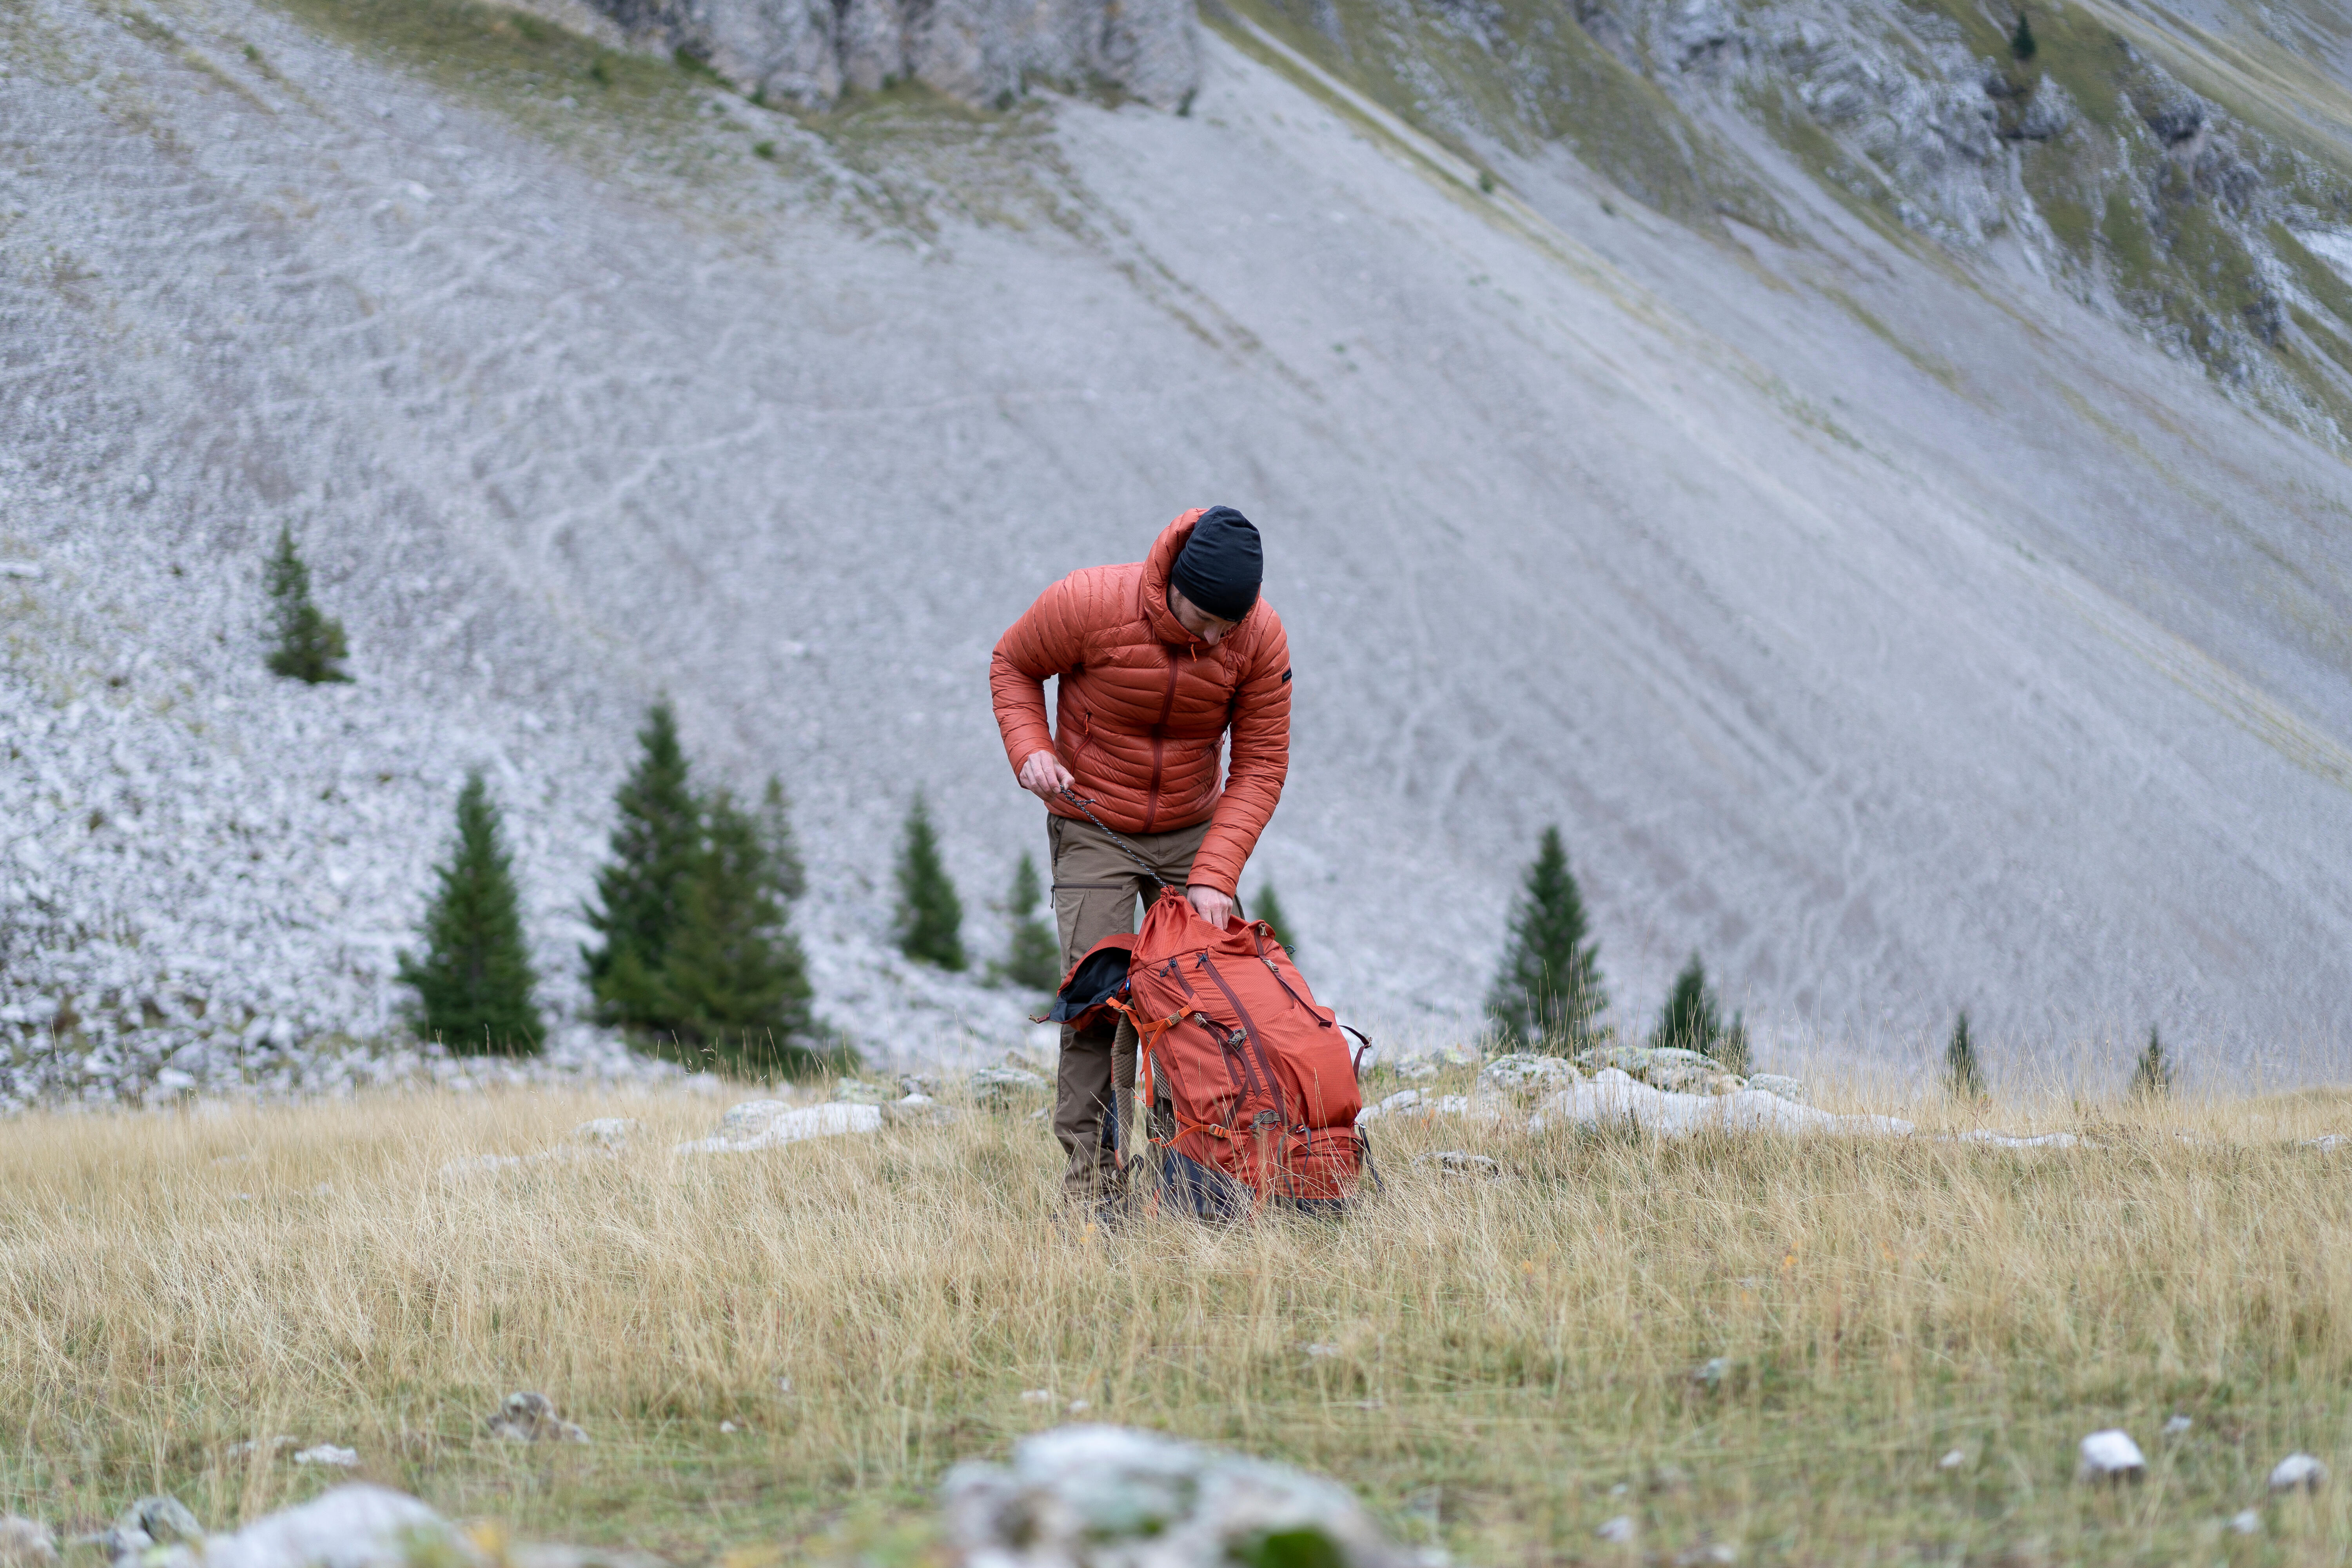 Pantalon de ski homme – FR 500 brun - Terre de Sienne - Wedze - Décathlon